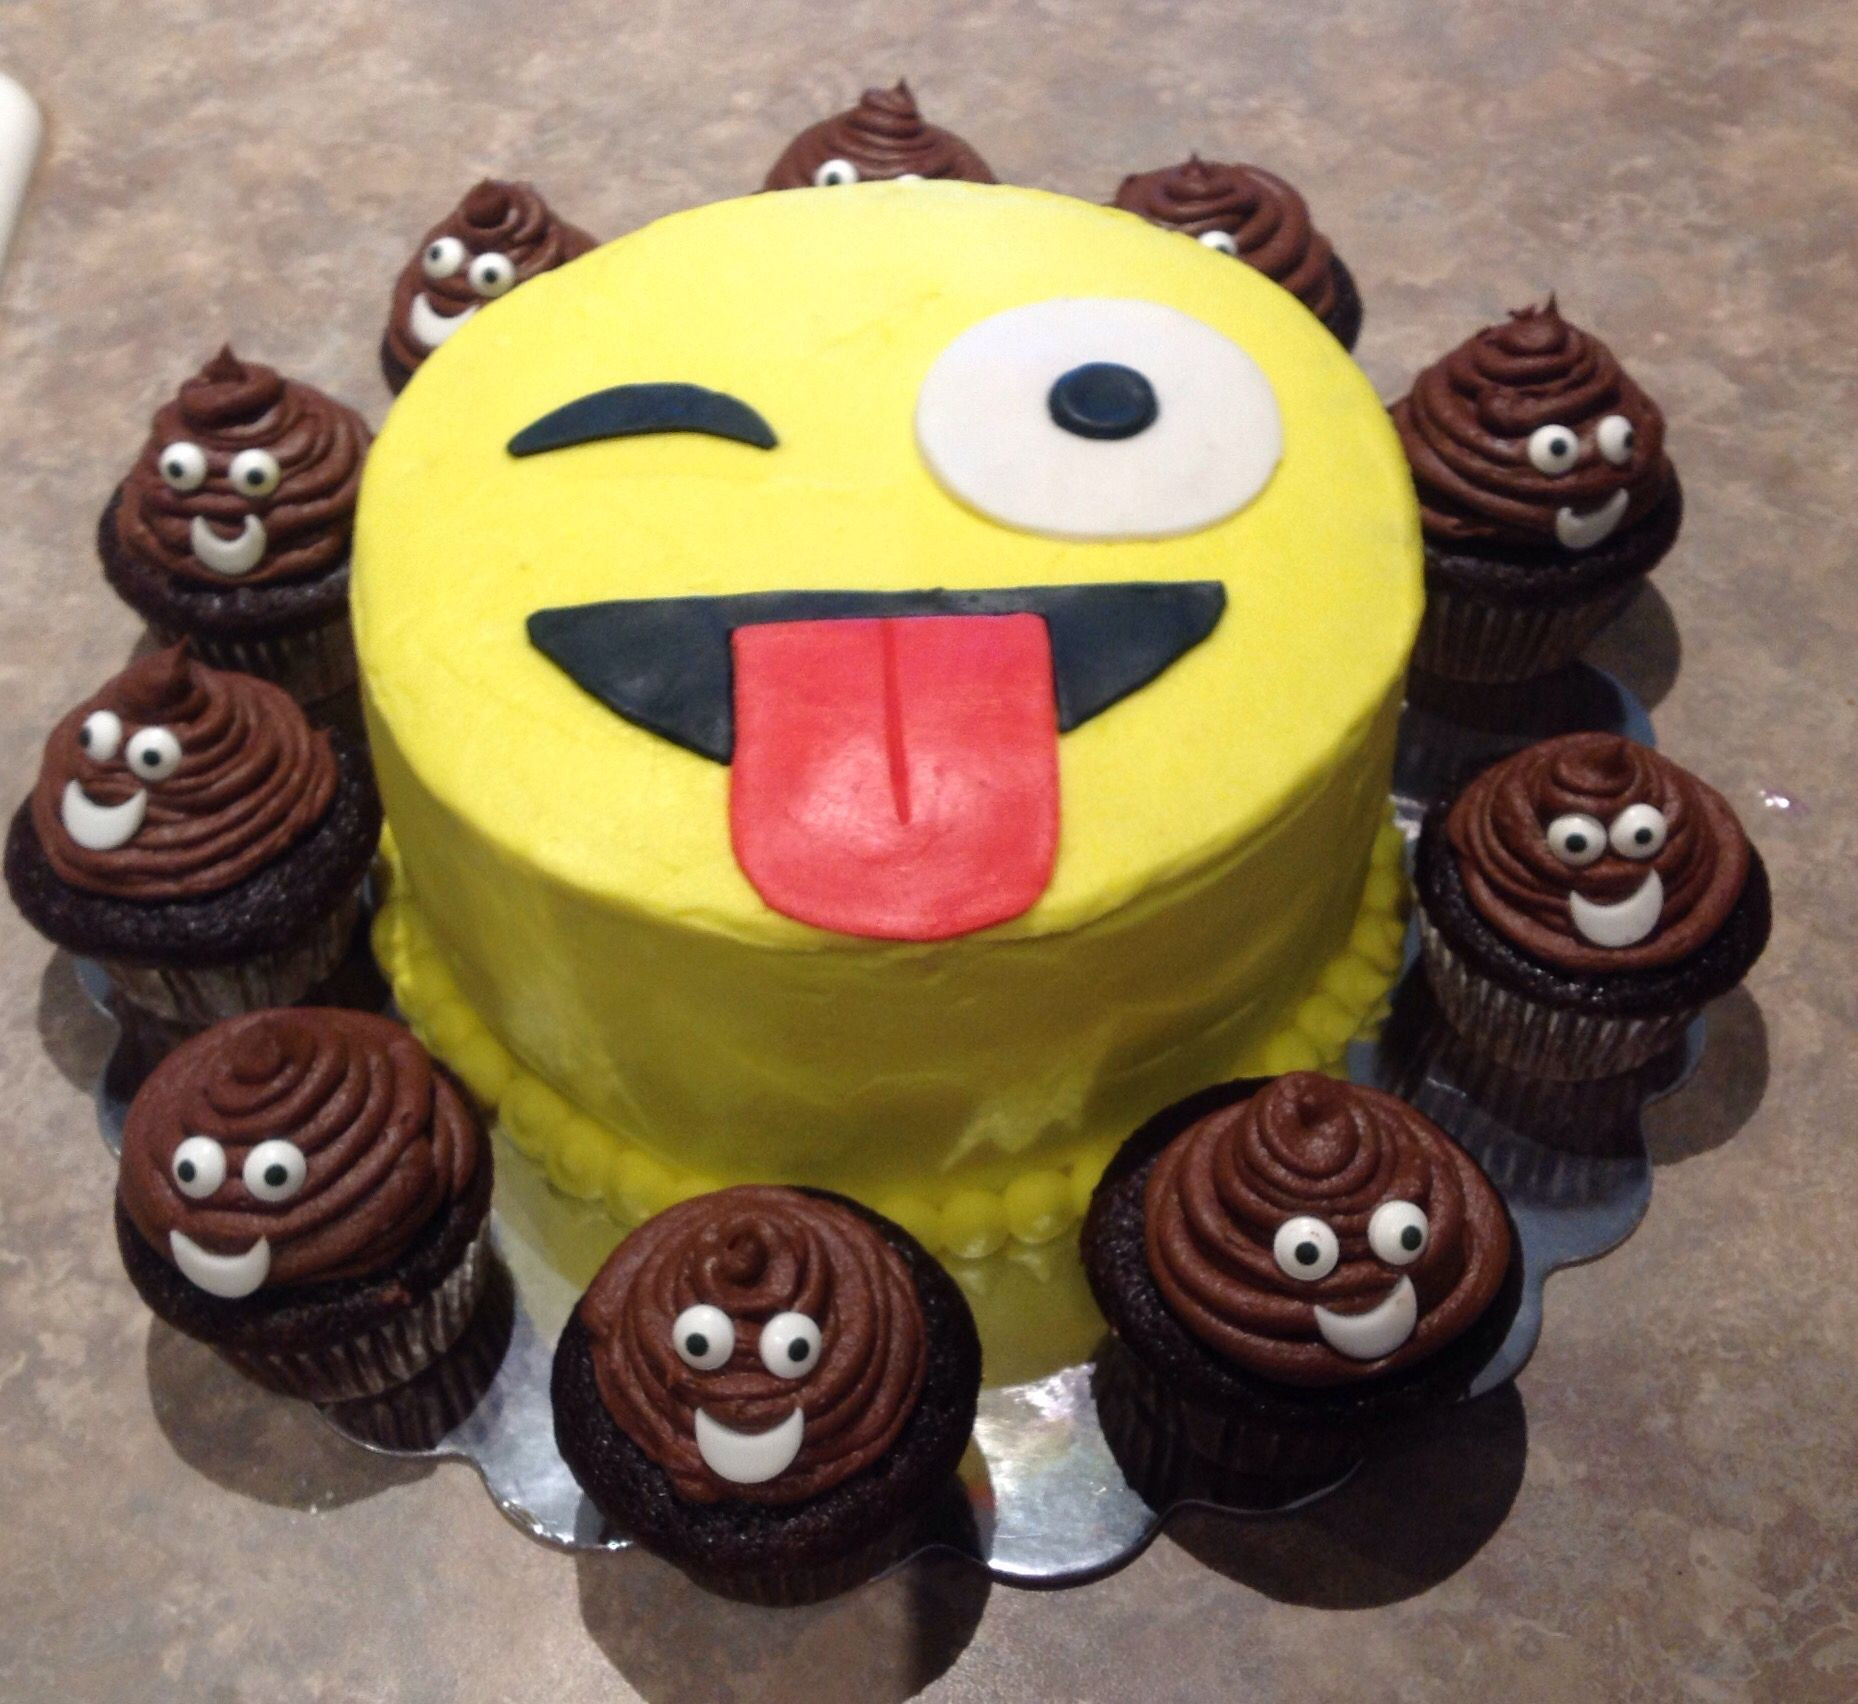 Best ideas about Emoji Birthday Cake Ideas
. Save or Pin Emoji birthday cake w emoji poop cupcakes Now.